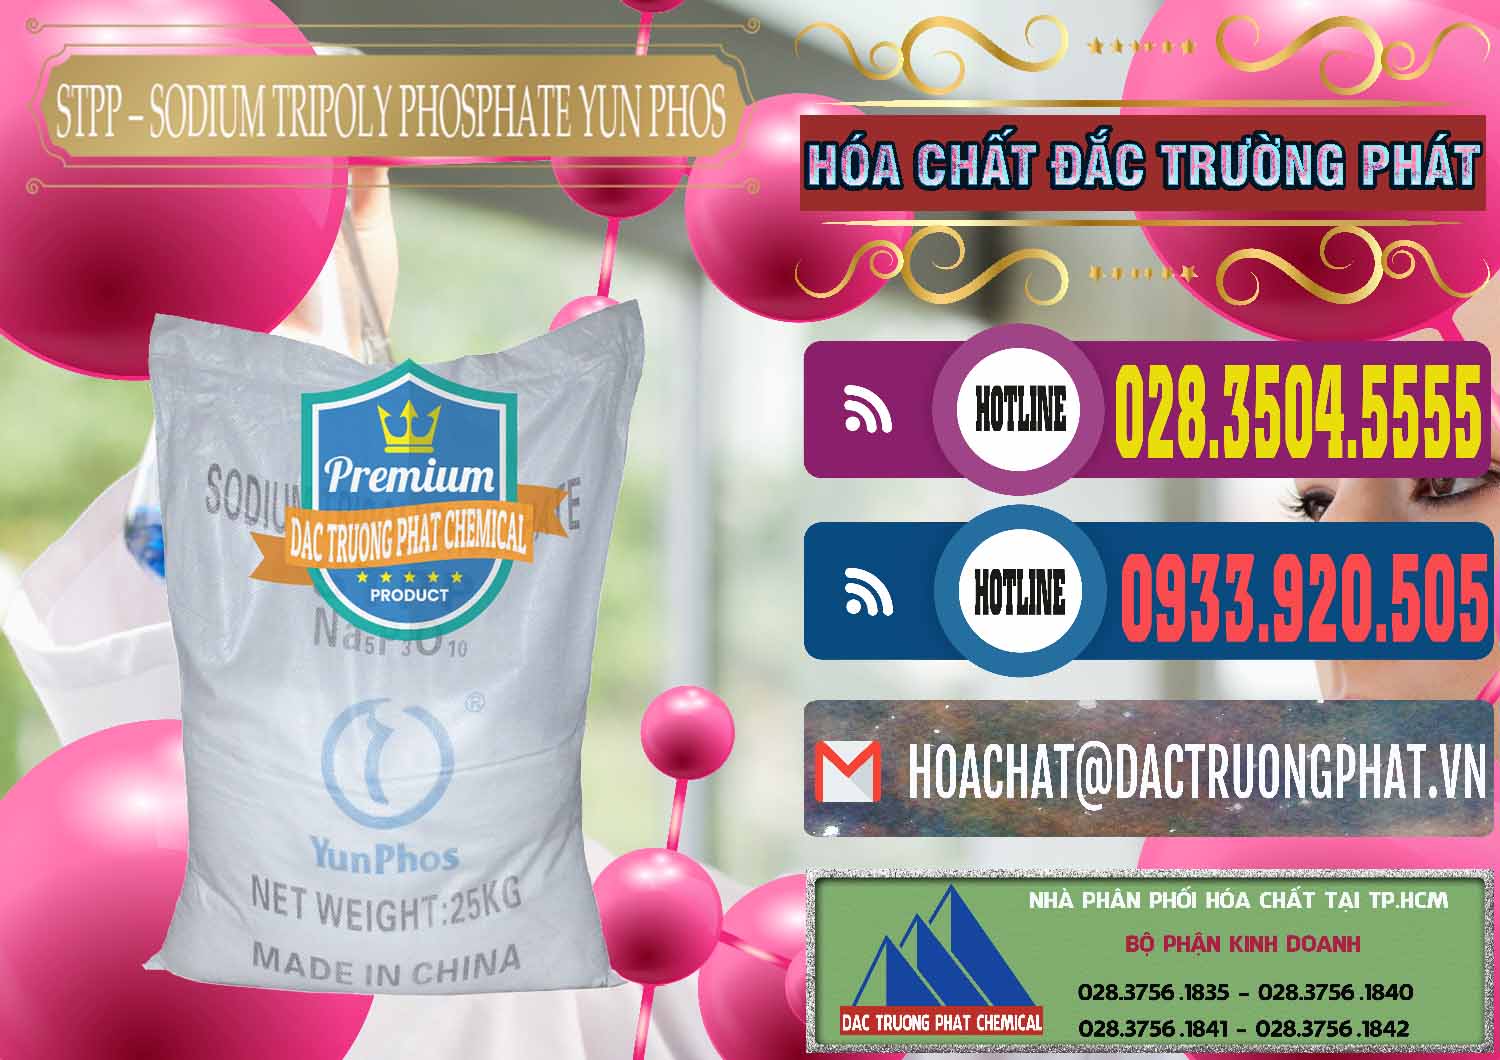 Nơi chuyên phân phối và bán Sodium Tripoly Phosphate - STPP Yun Phos Trung Quốc China - 0153 - Đơn vị cung cấp và phân phối hóa chất tại TP.HCM - muabanhoachat.com.vn